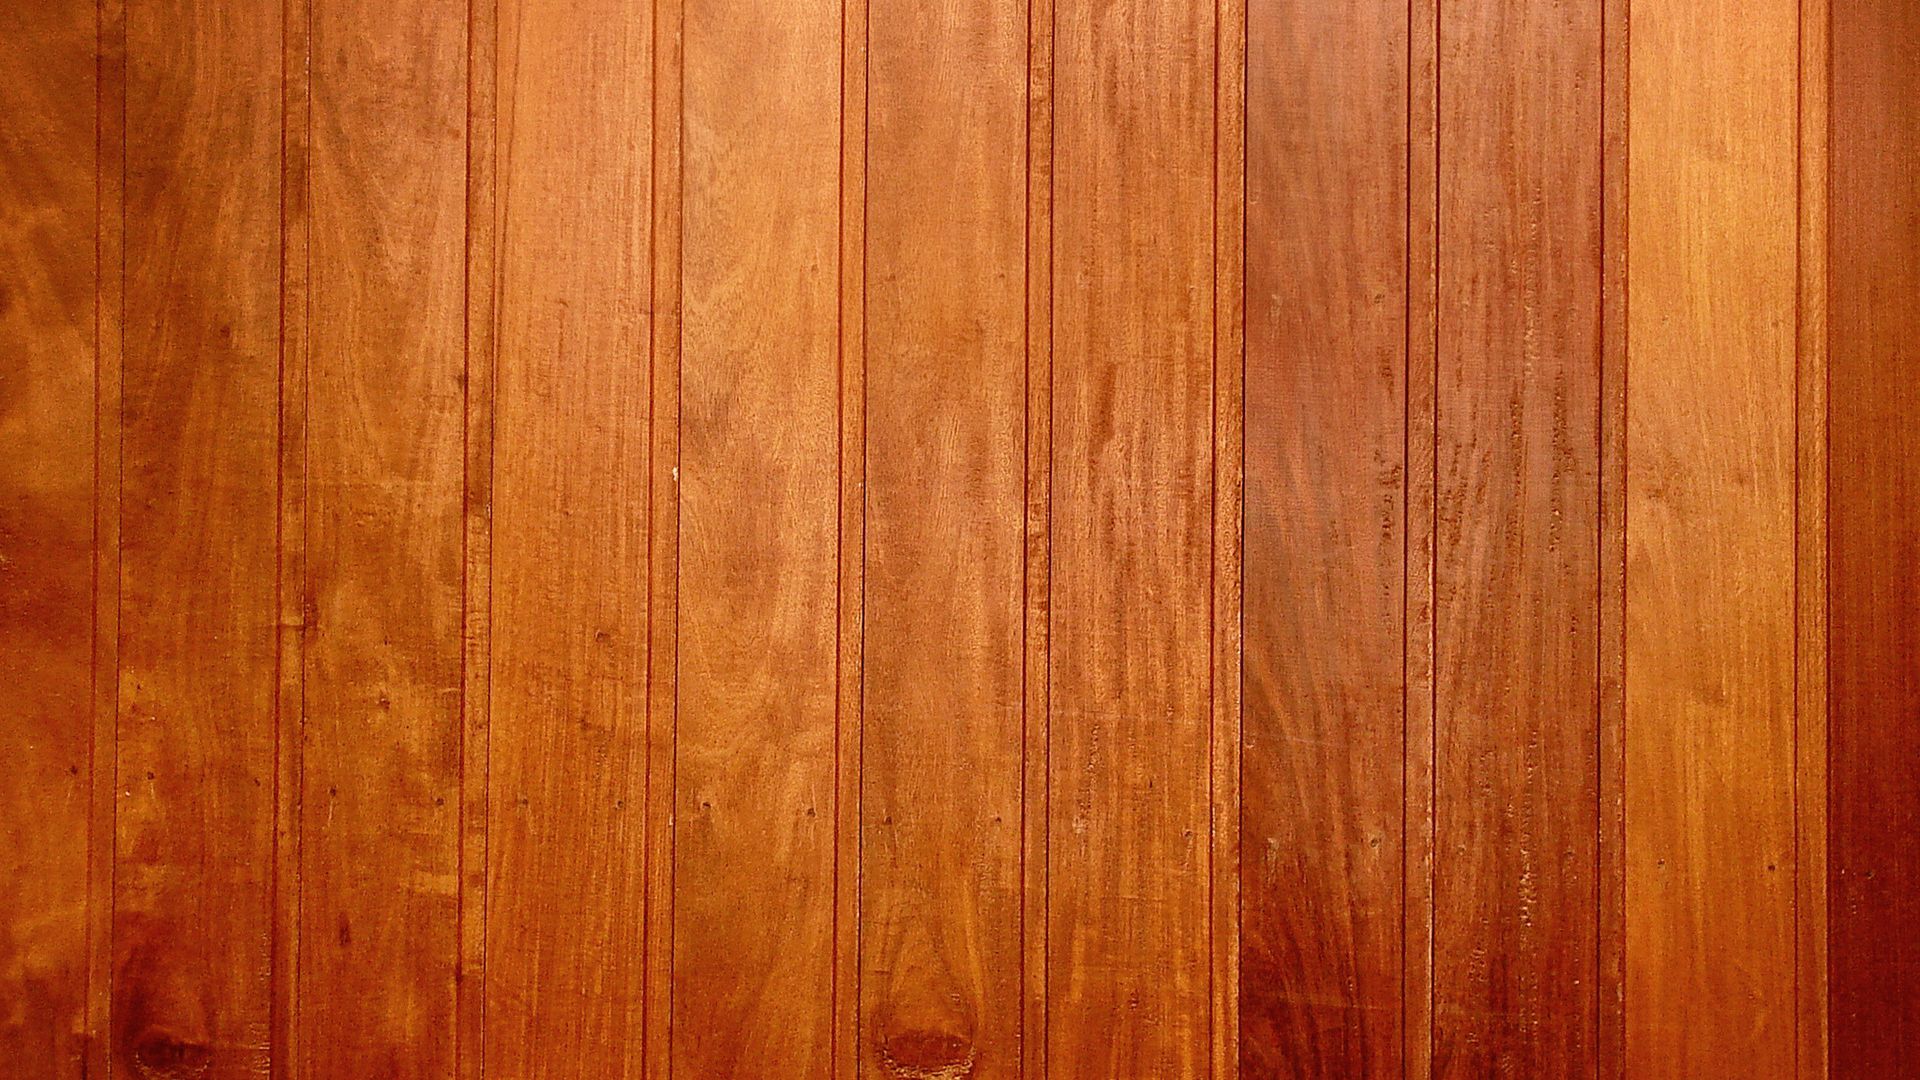 Tải hình nền gỗ nền, tấm ván, nét vân: Không còn phải lo lắng tìm kiếm hình nền gỗ chất lượng cao. Đây là một bộ sưu tập lớn những hình nền gỗ đẹp nhất với nét vân tự nhiên, tấm ván chắc chắn và màu sắc đa dạng. Tải ngay để trang trí cho màn hình của bạn.